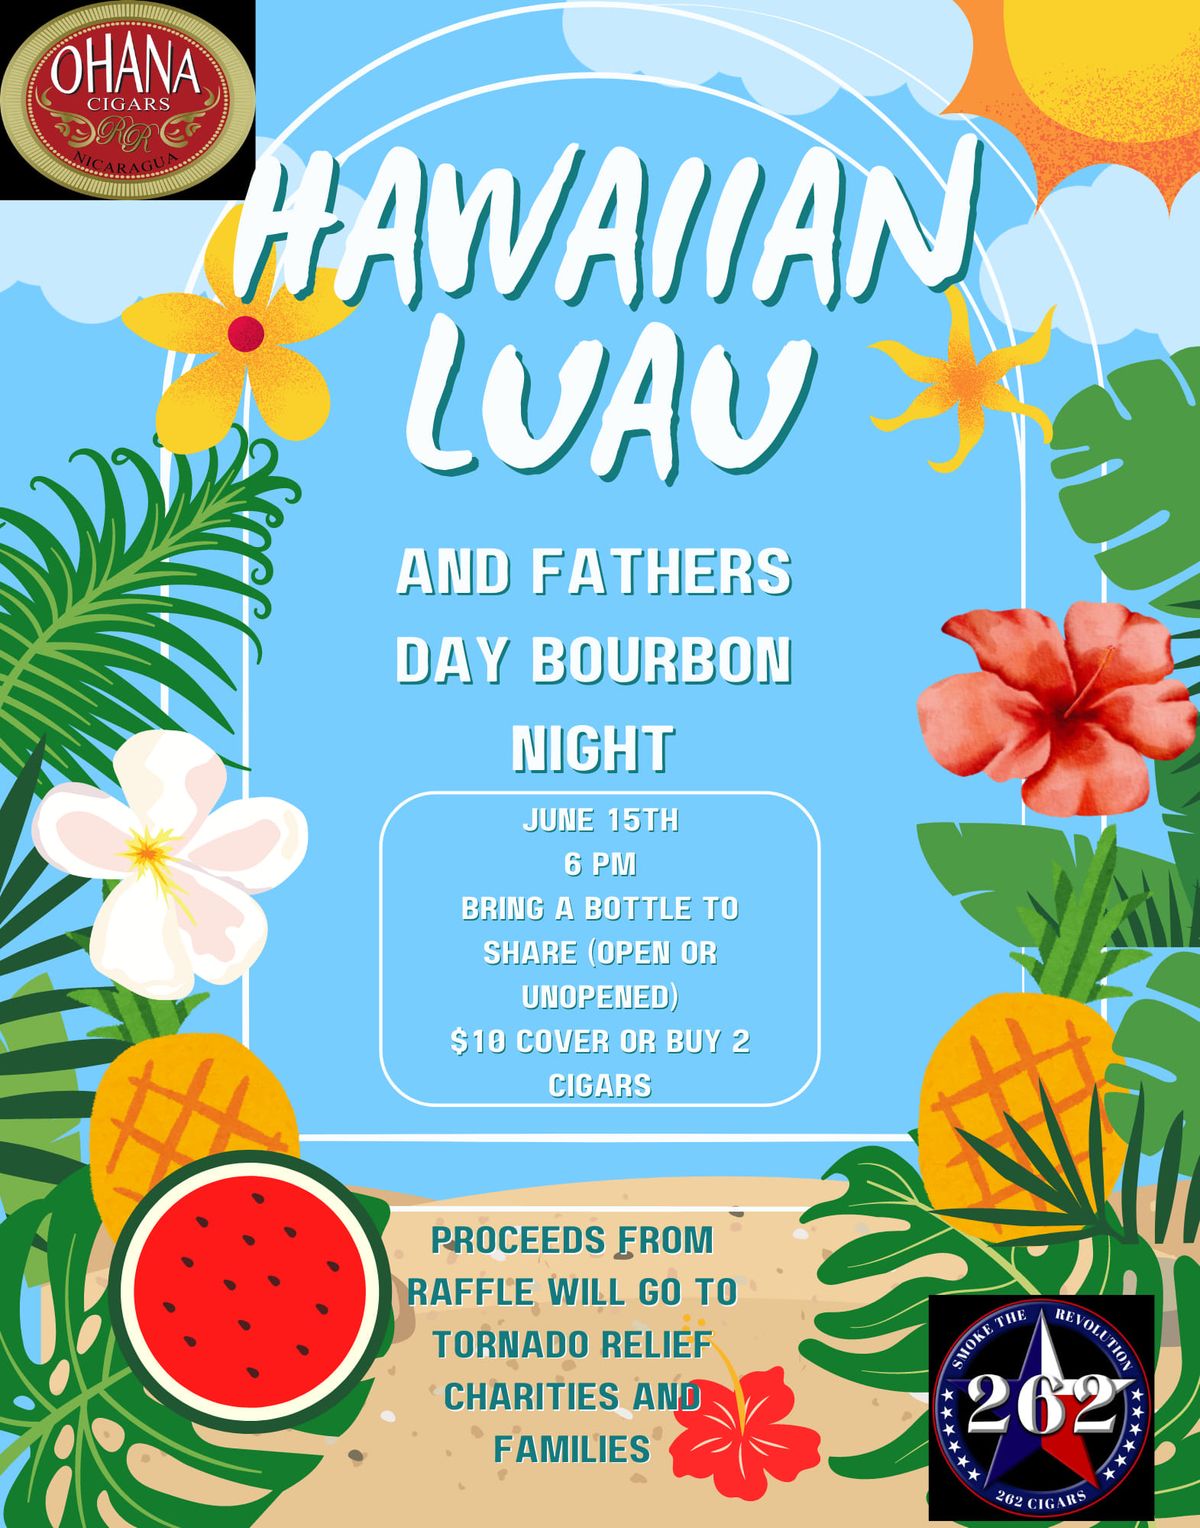 Hawaiian Luau and Fathers Day Bourbon Night 